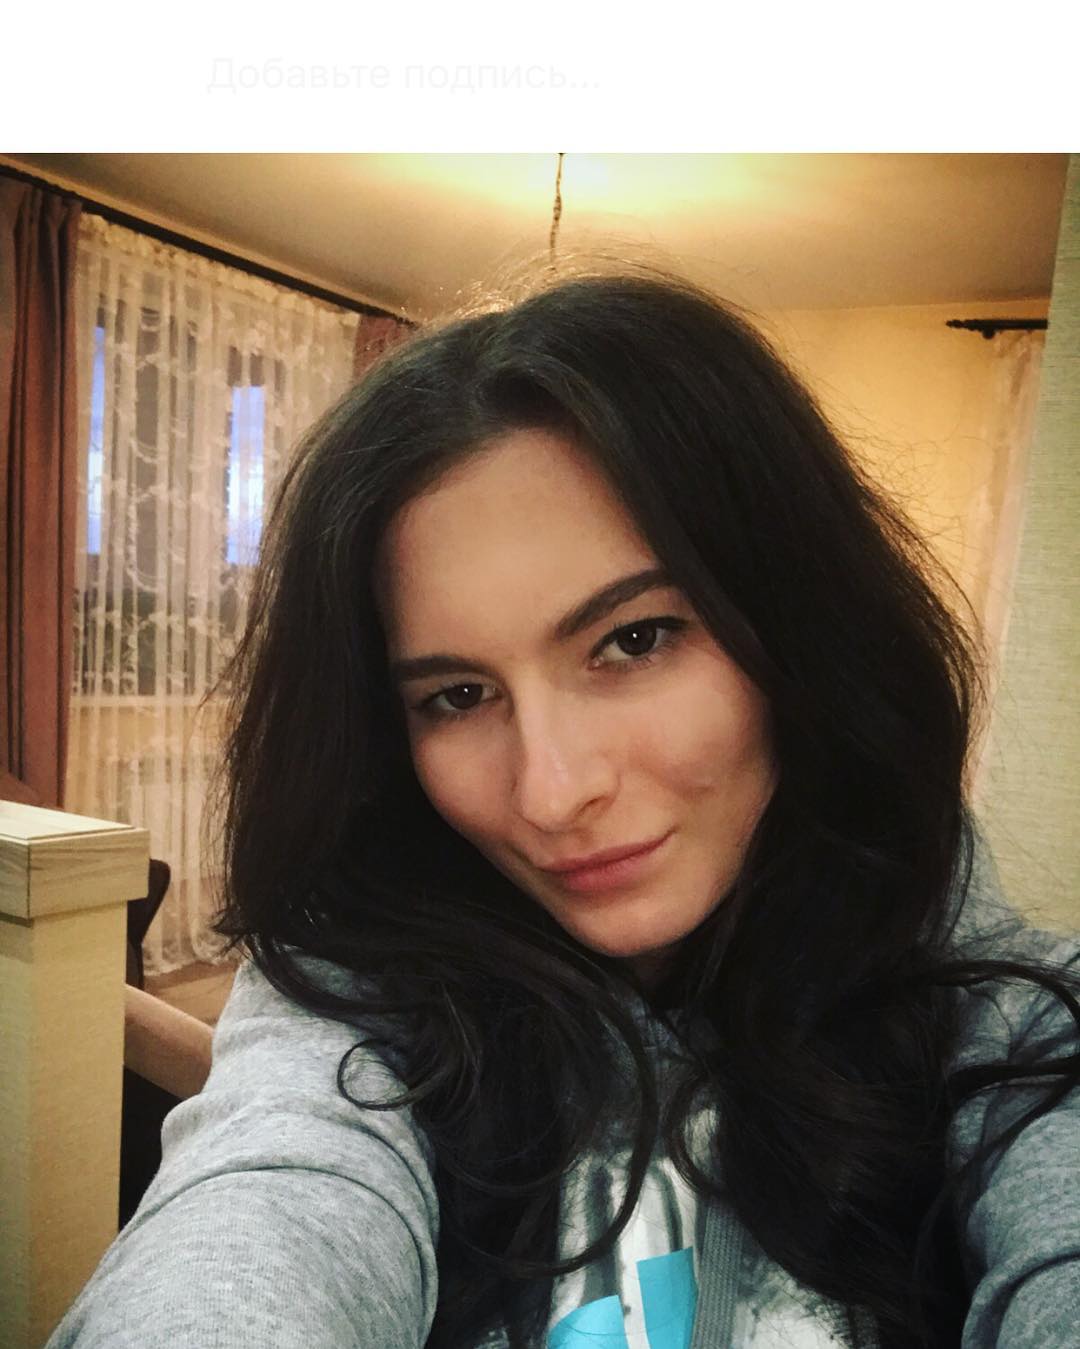 Наталья Непряева выложила снимок в своем Инстаграме